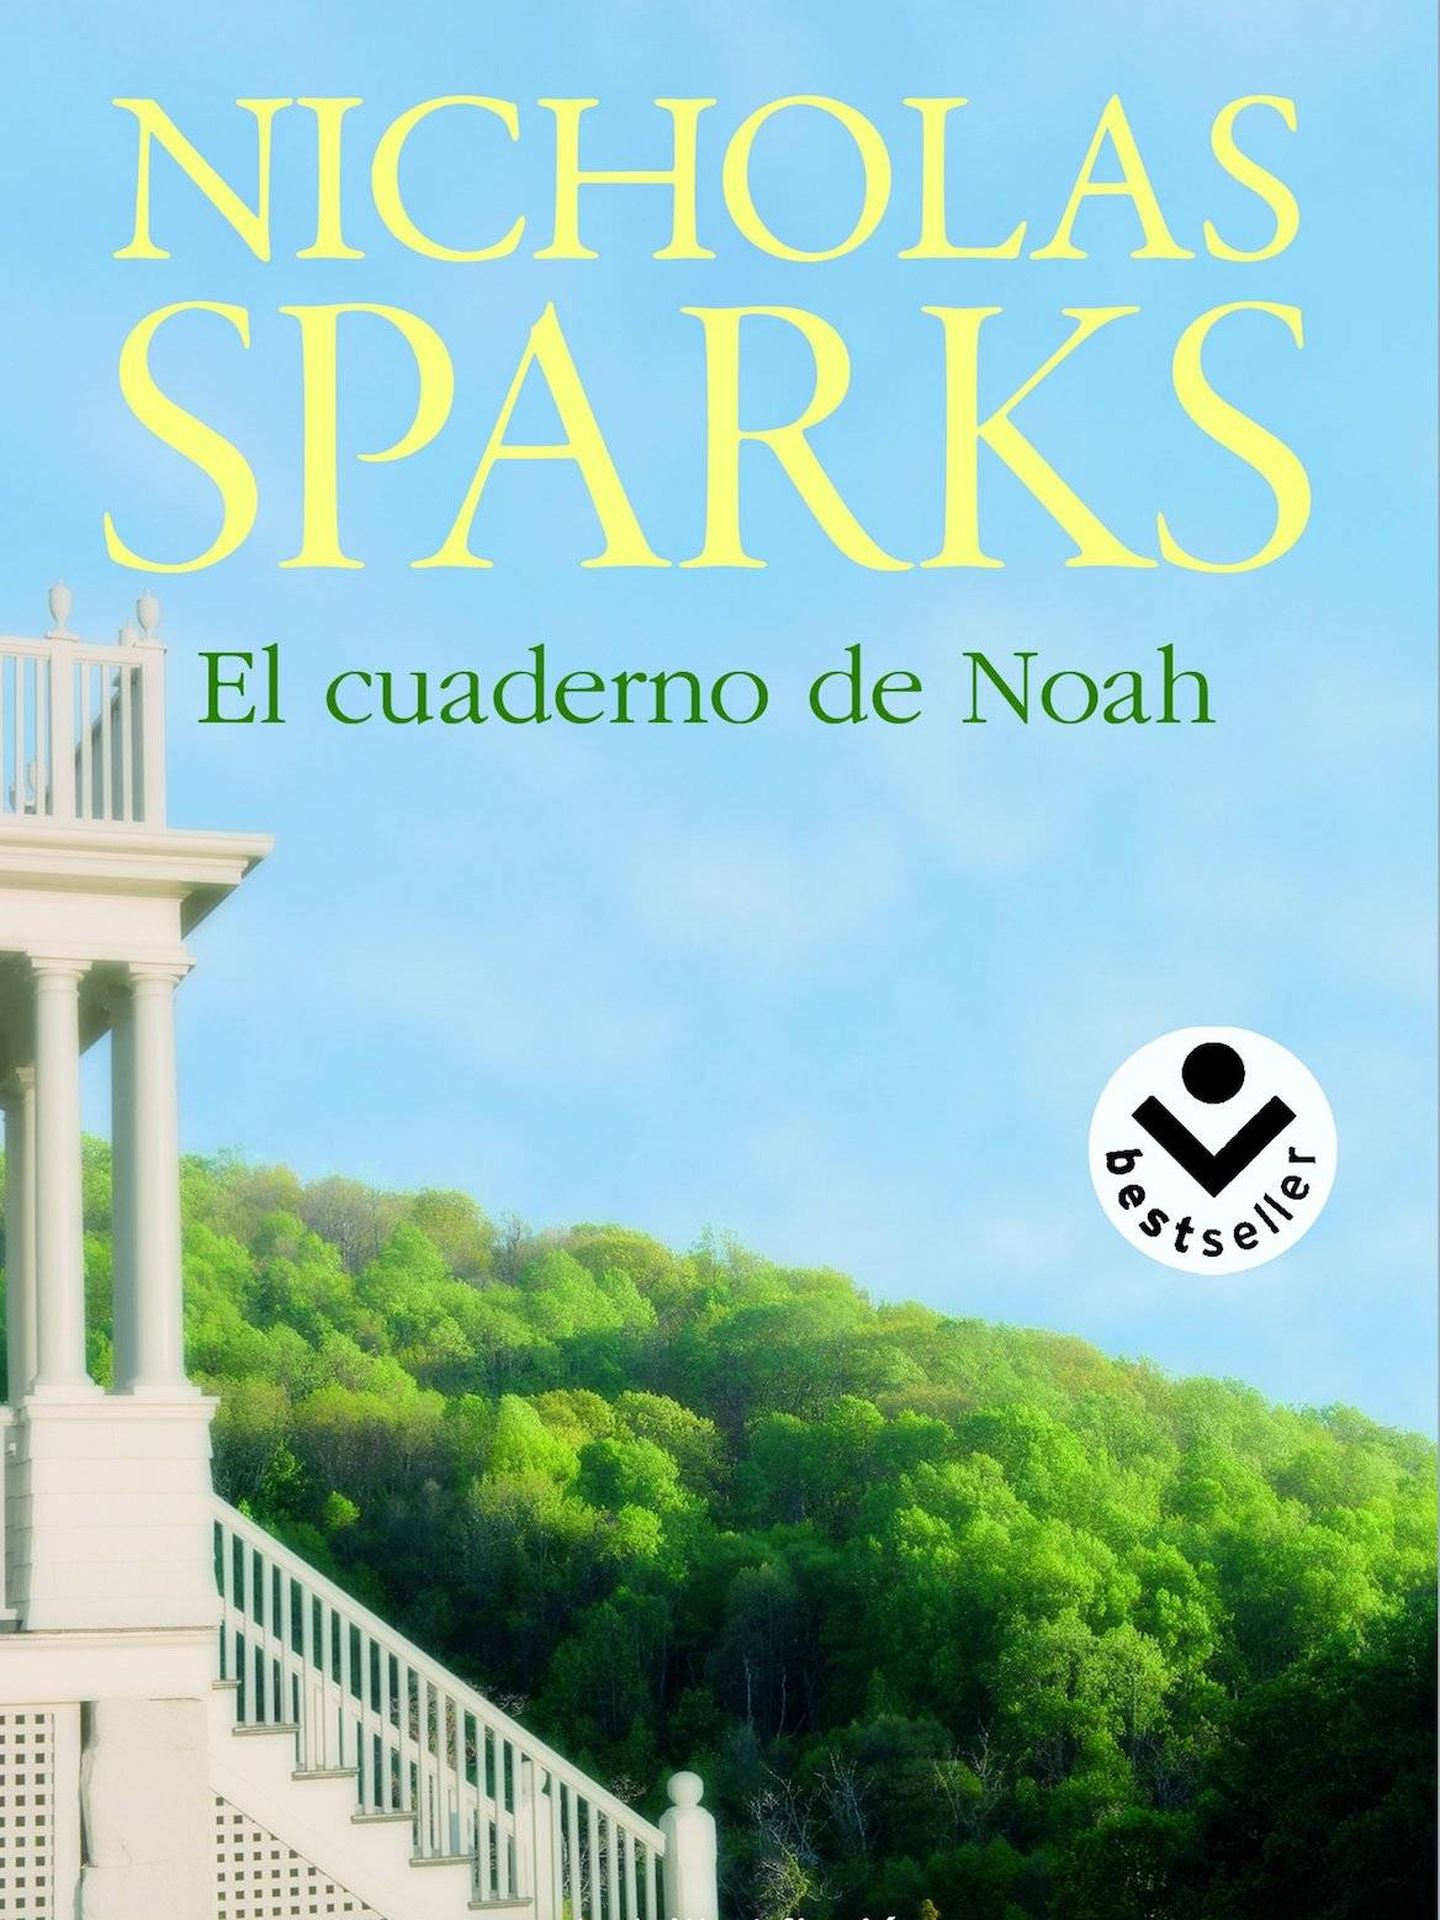 'El cuaderno de Noah', de Nicholas Sparks